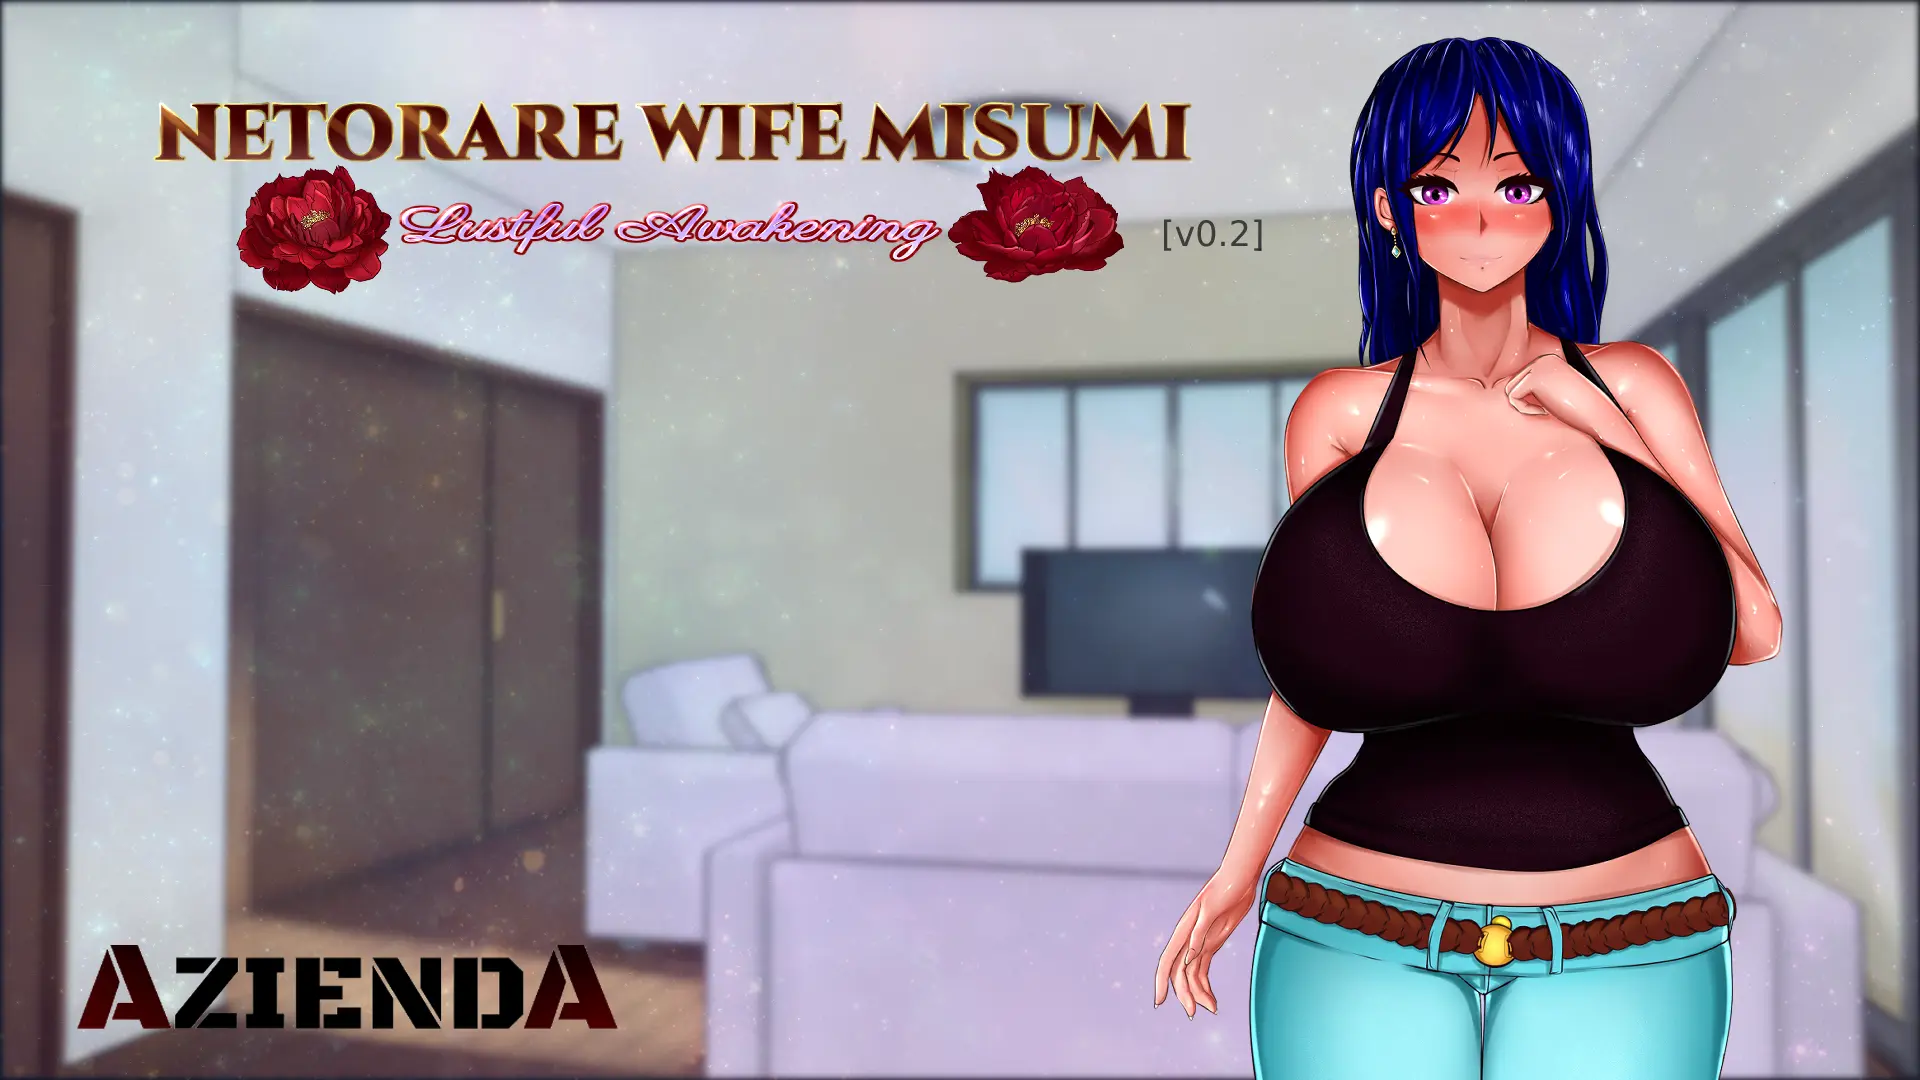 Netorare Wife Misumi - Lustful Awakening [v0.2] main image